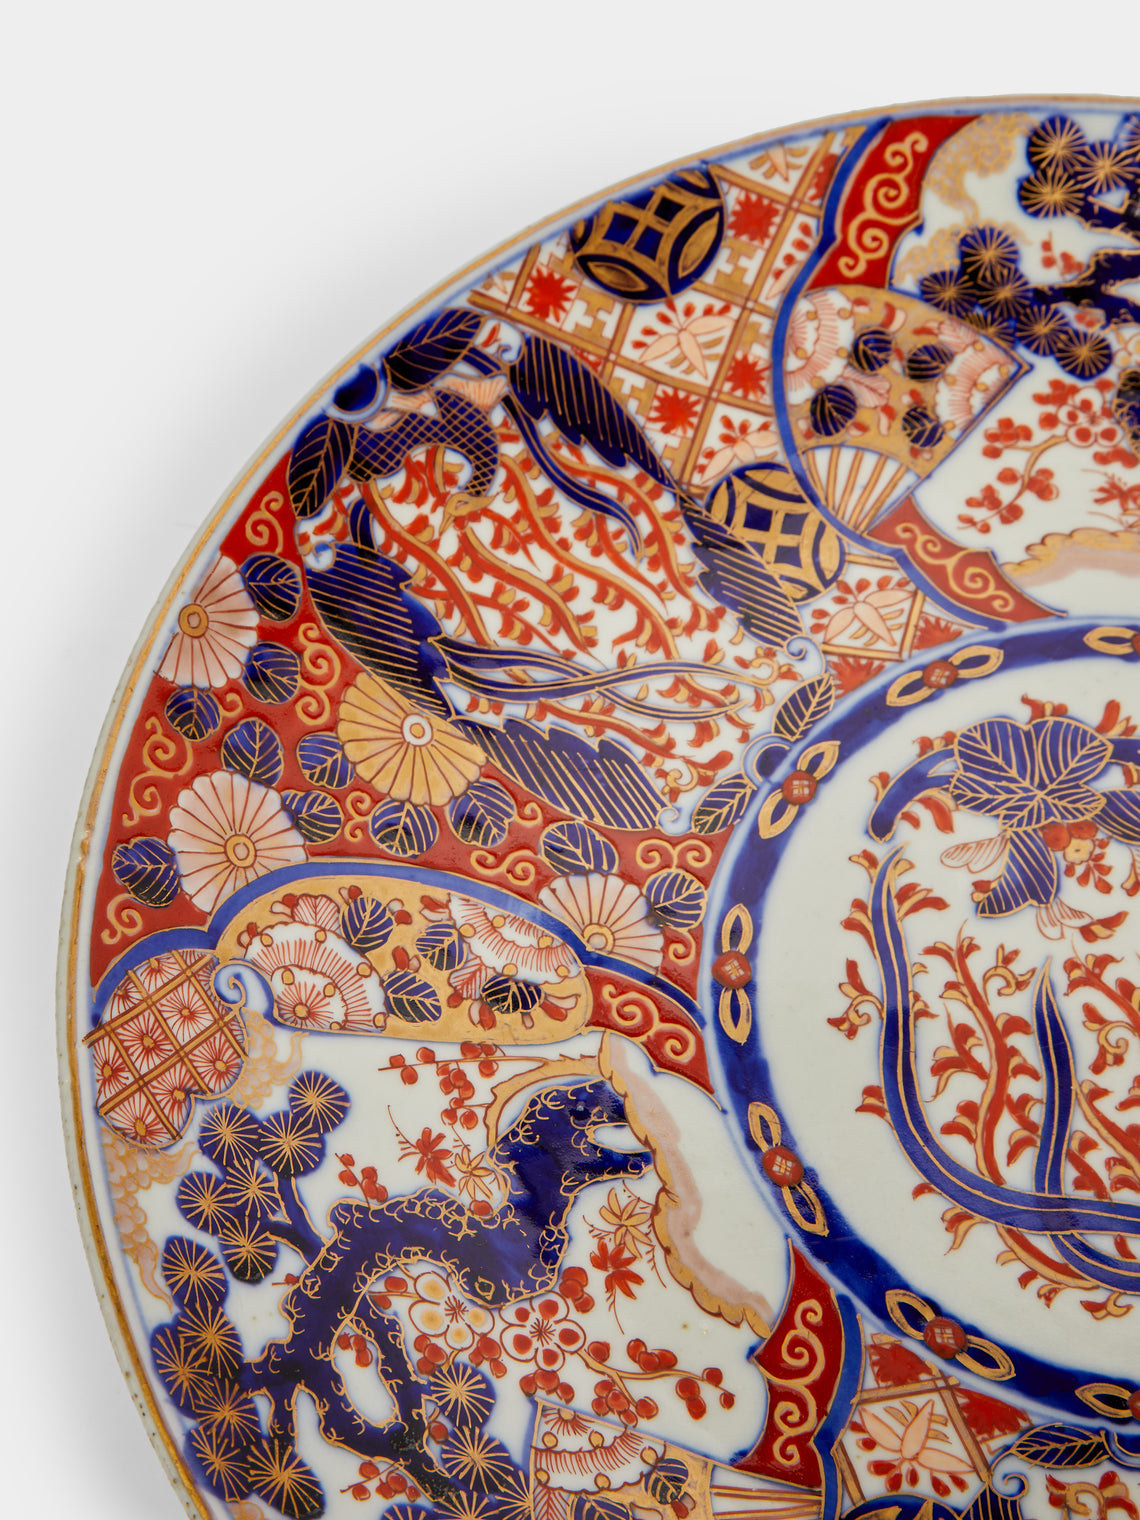 Antique and Vintage - 1880s Imari Porcelain Large Platters (Set of 2) -  - ABASK